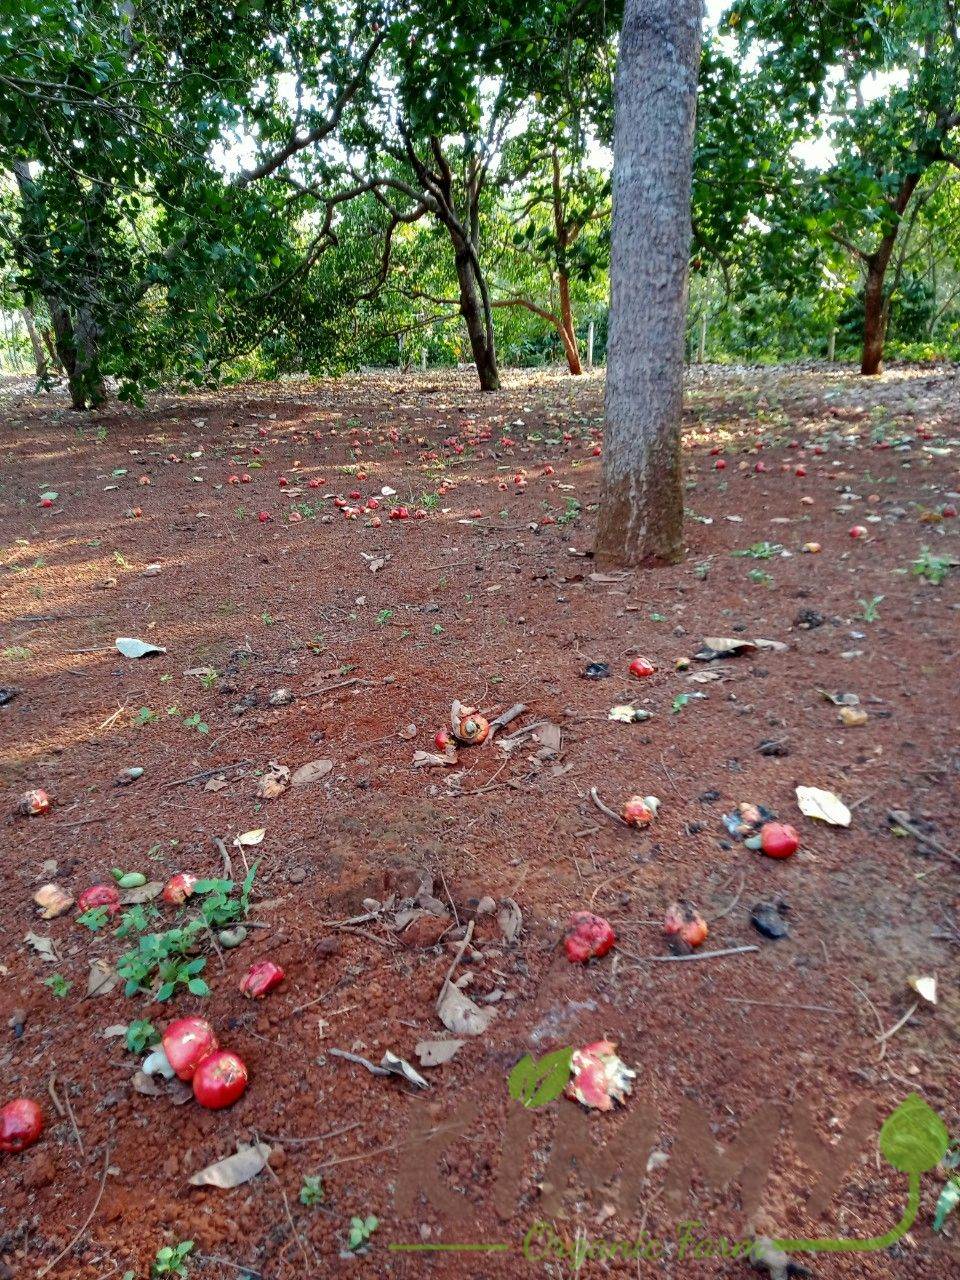 Sau khi trưởng thành cây điều tại Bình Phước Việt Nam bắt đầu đơm bông kết trái, thì năng suất trung bình đạt từ 2,8 - 3 tấn/ha/năm. Cây điều trưởng thành có thể cao tới 6-12 mét (20-40 feet)